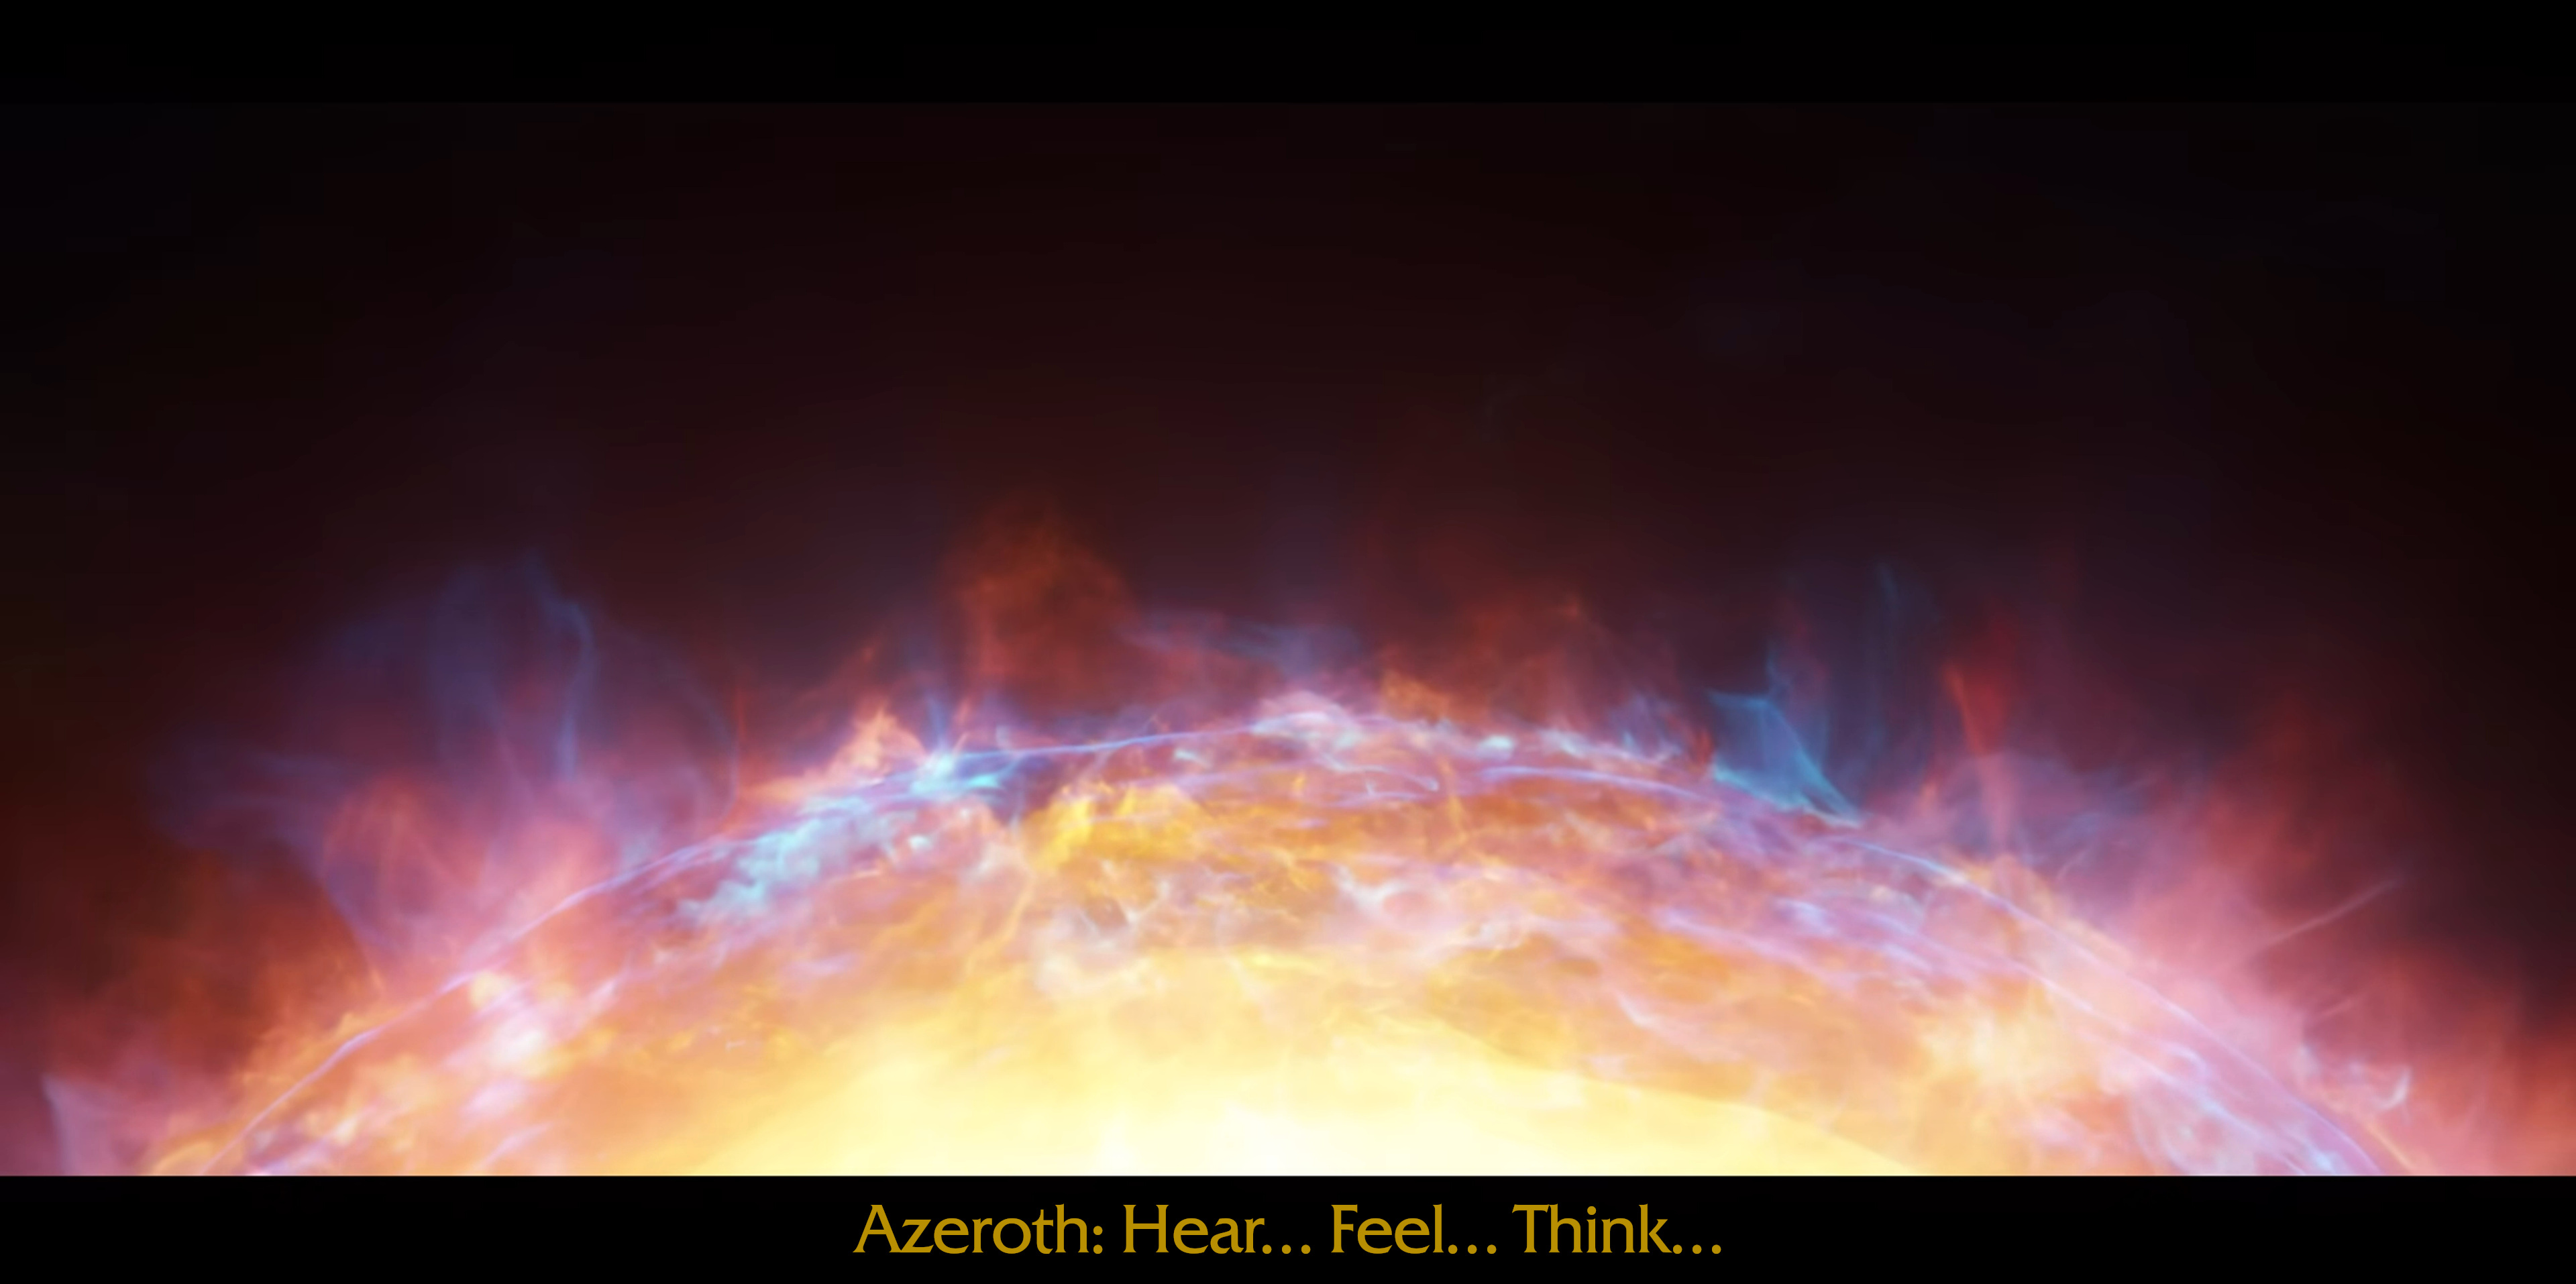 Azeroth: Hear... Feel... Think...